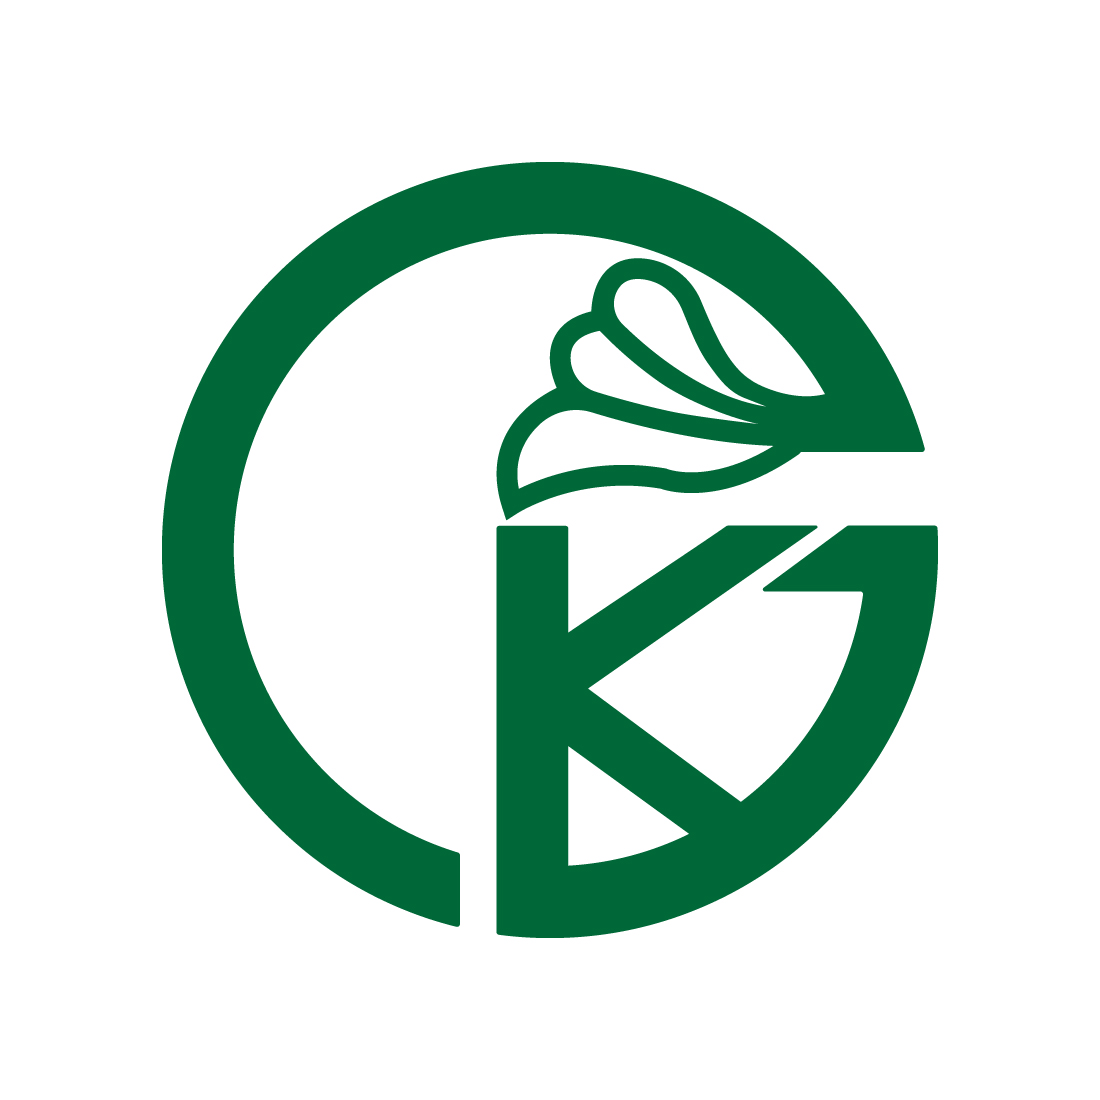 Initials GK letters logo design vector images GK Green Leaf logo design KG logo best icon template illustration Leaf best icon design preview image.